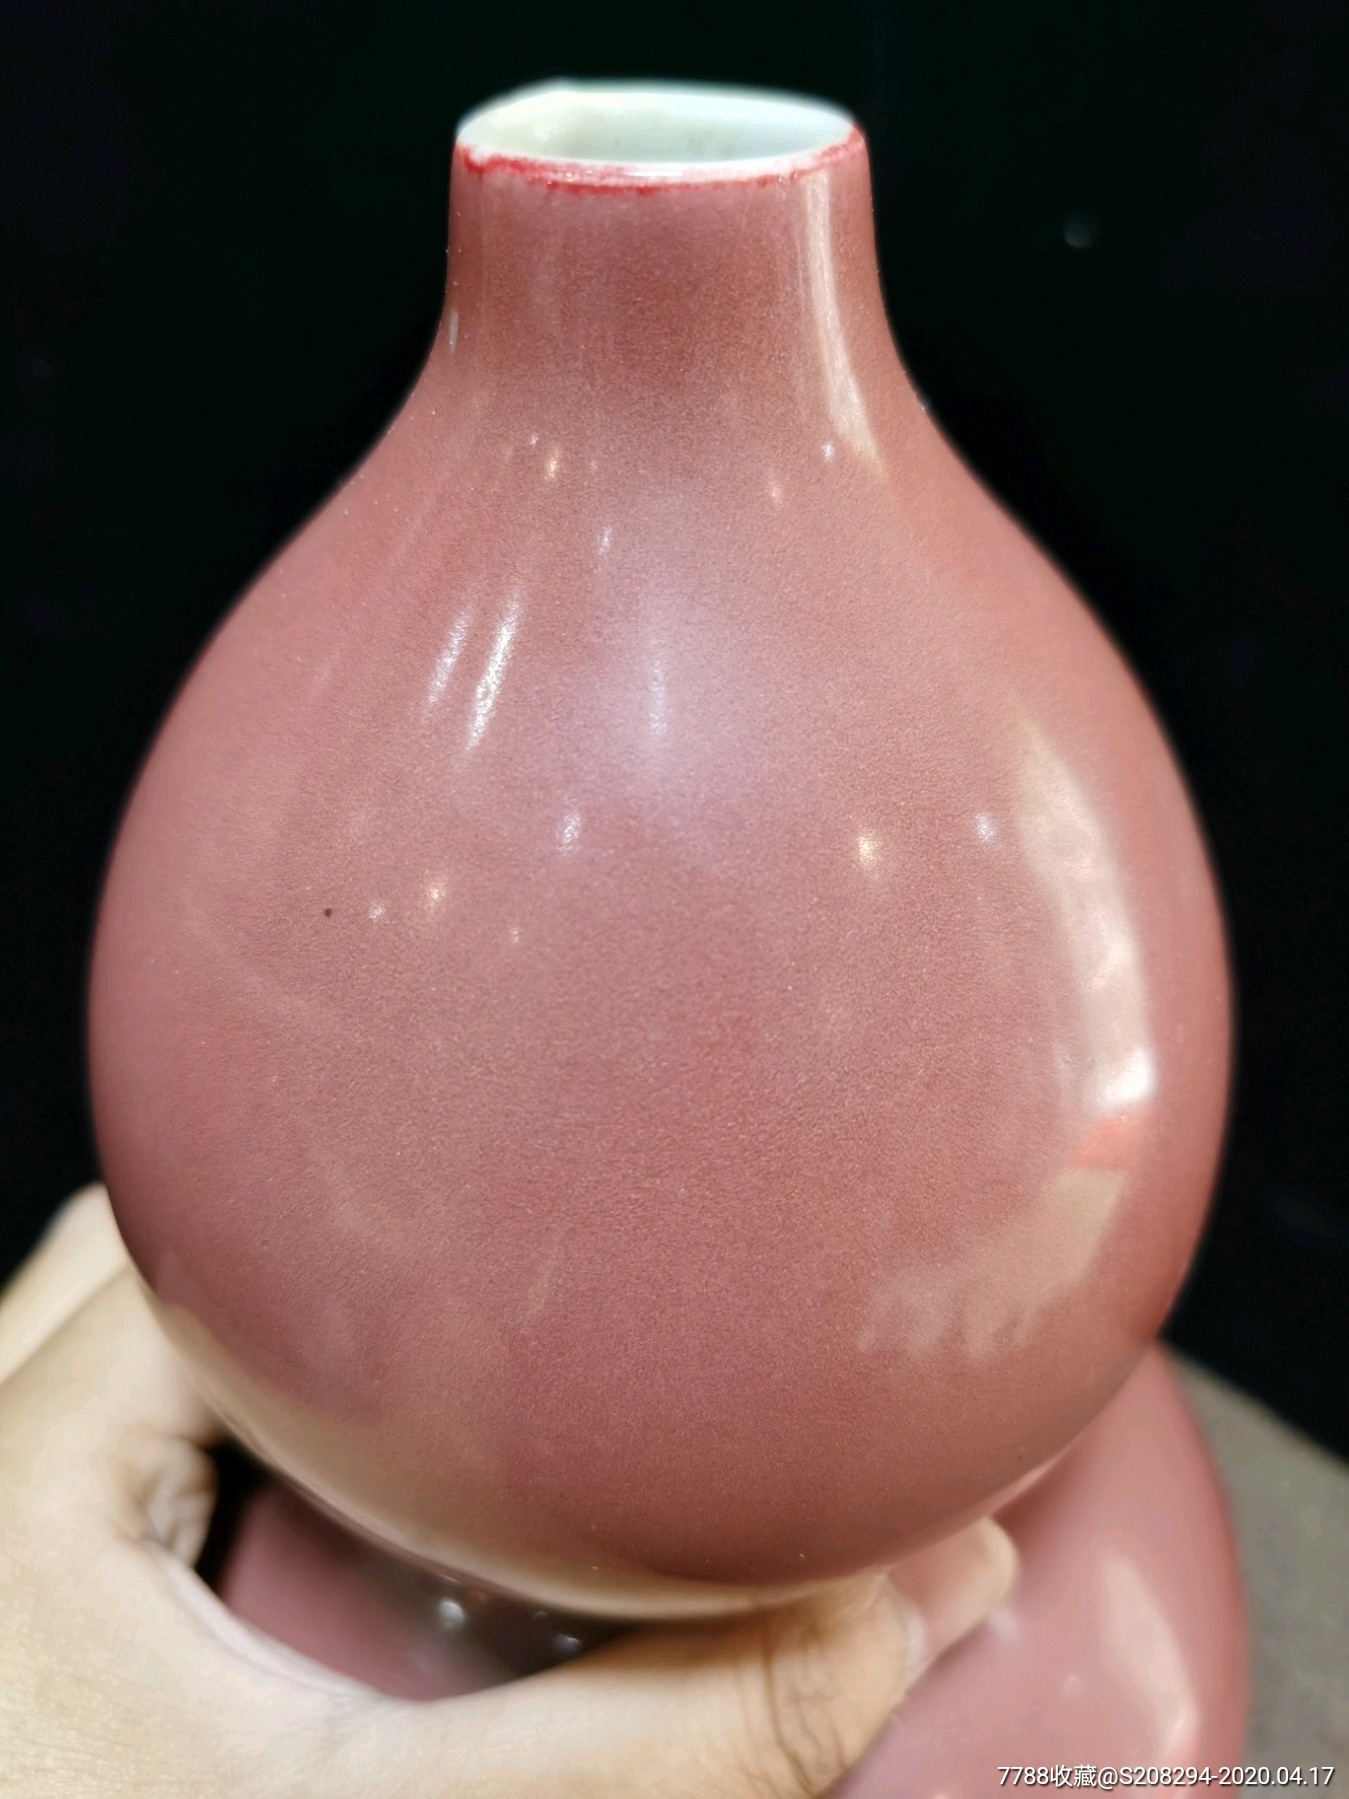 现代化学釉豇豆红瓷器图片